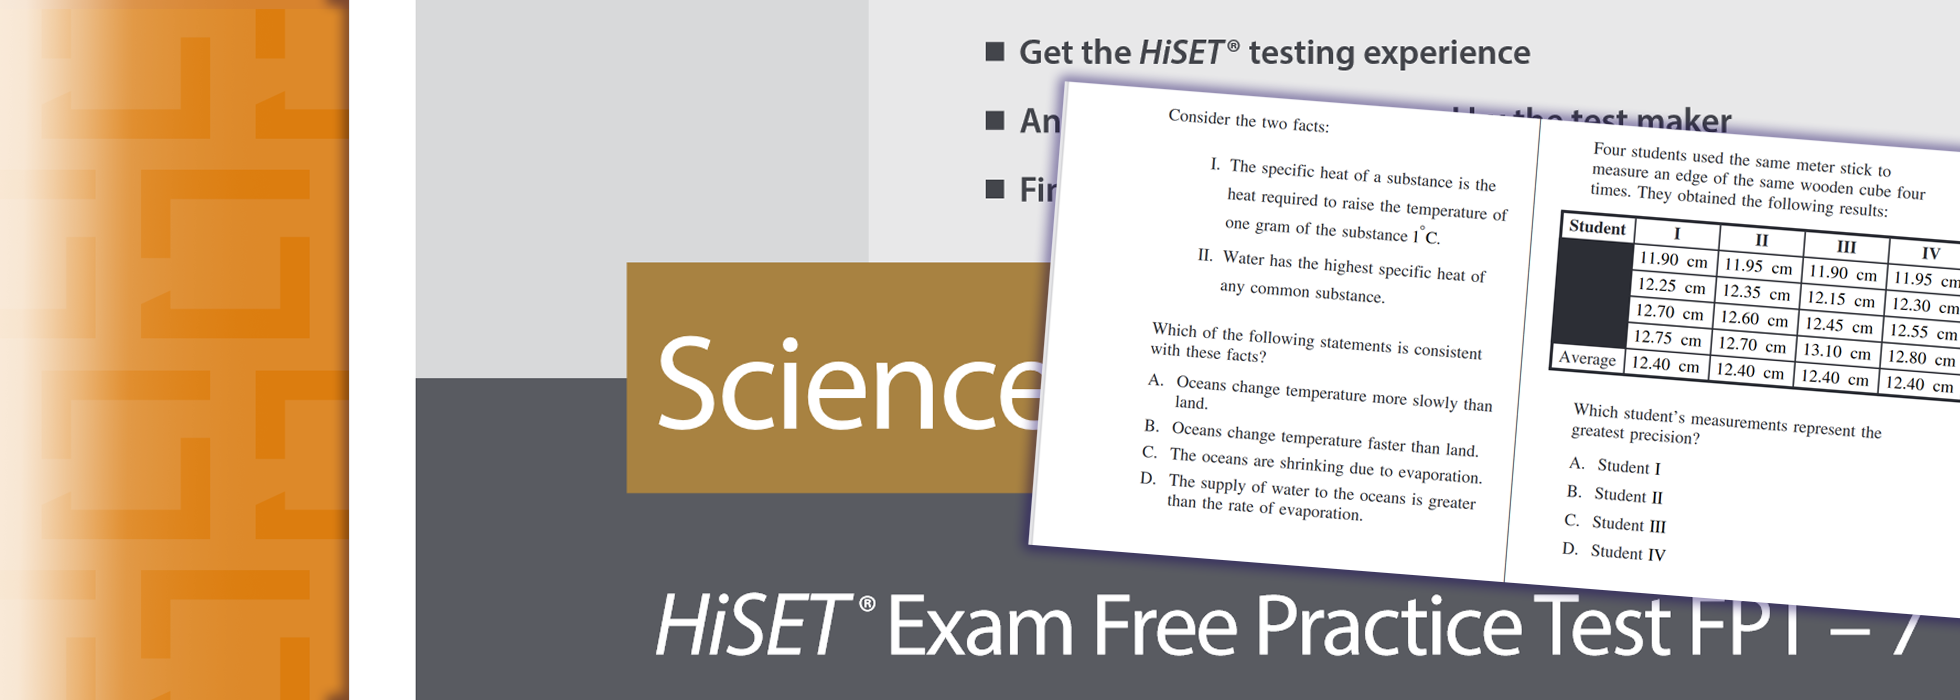 HiSET Practice Tests HiSET